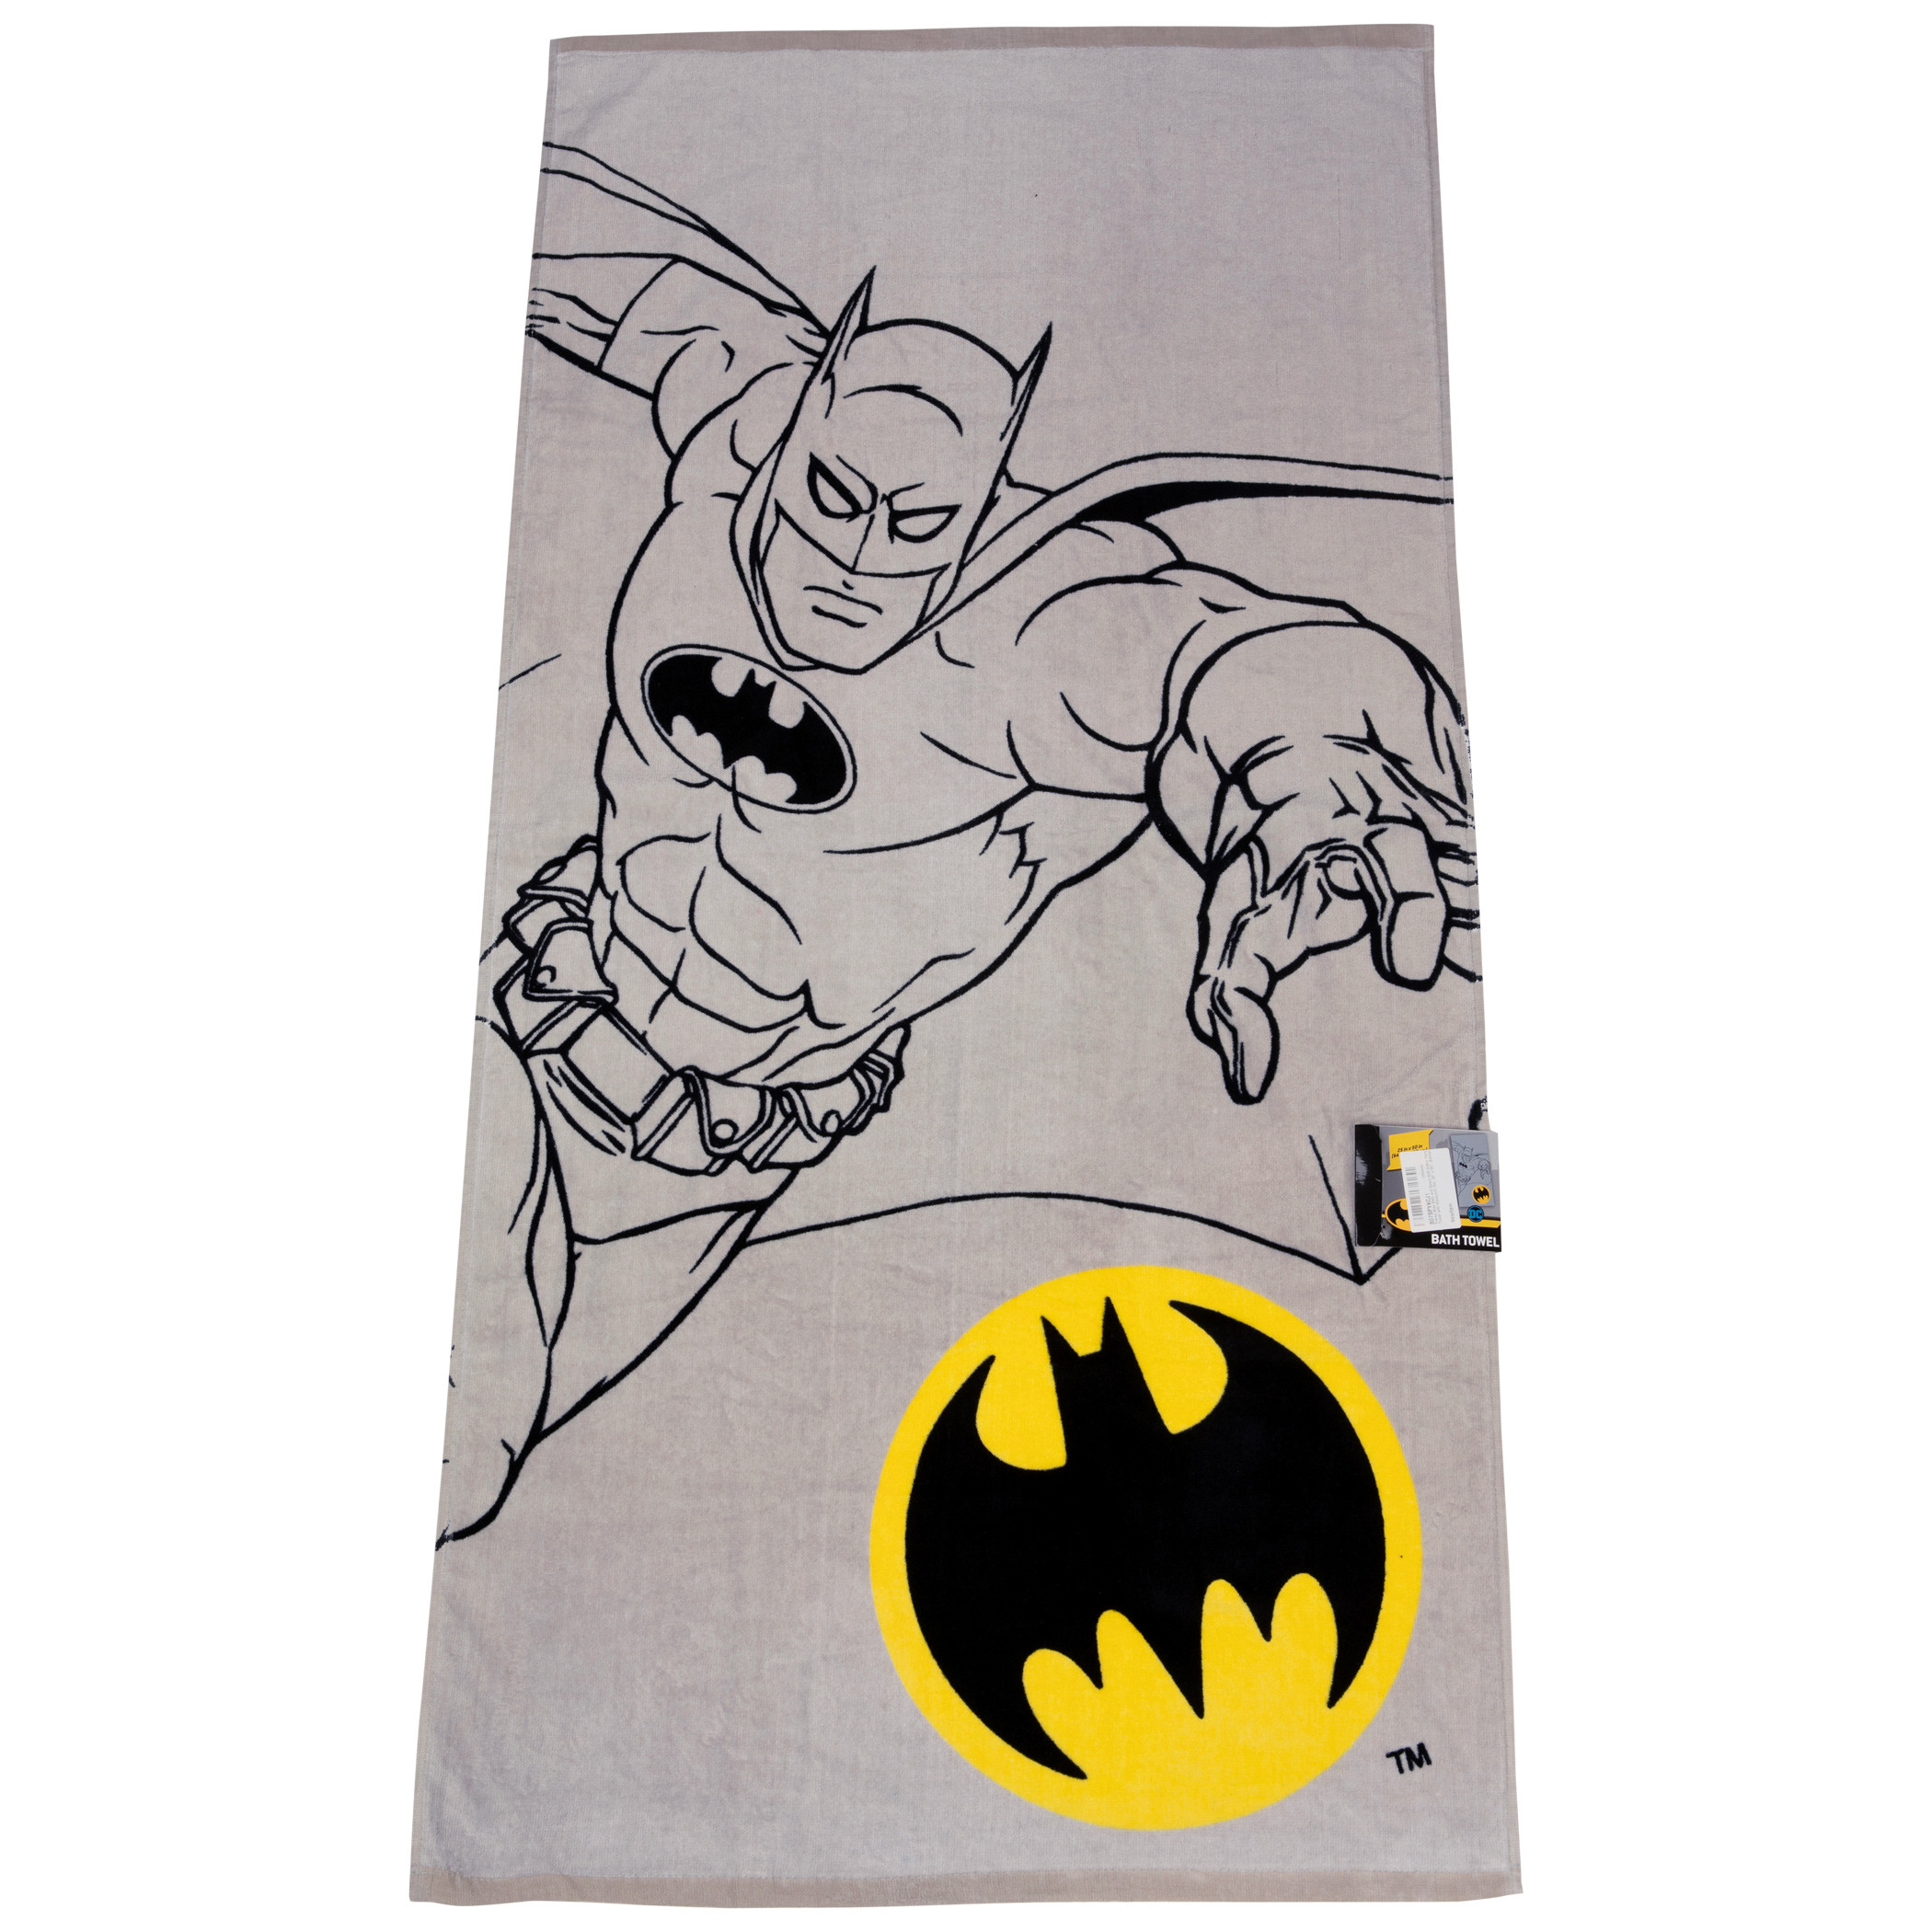 Batman Character Sketch and Symbol Bath Towel